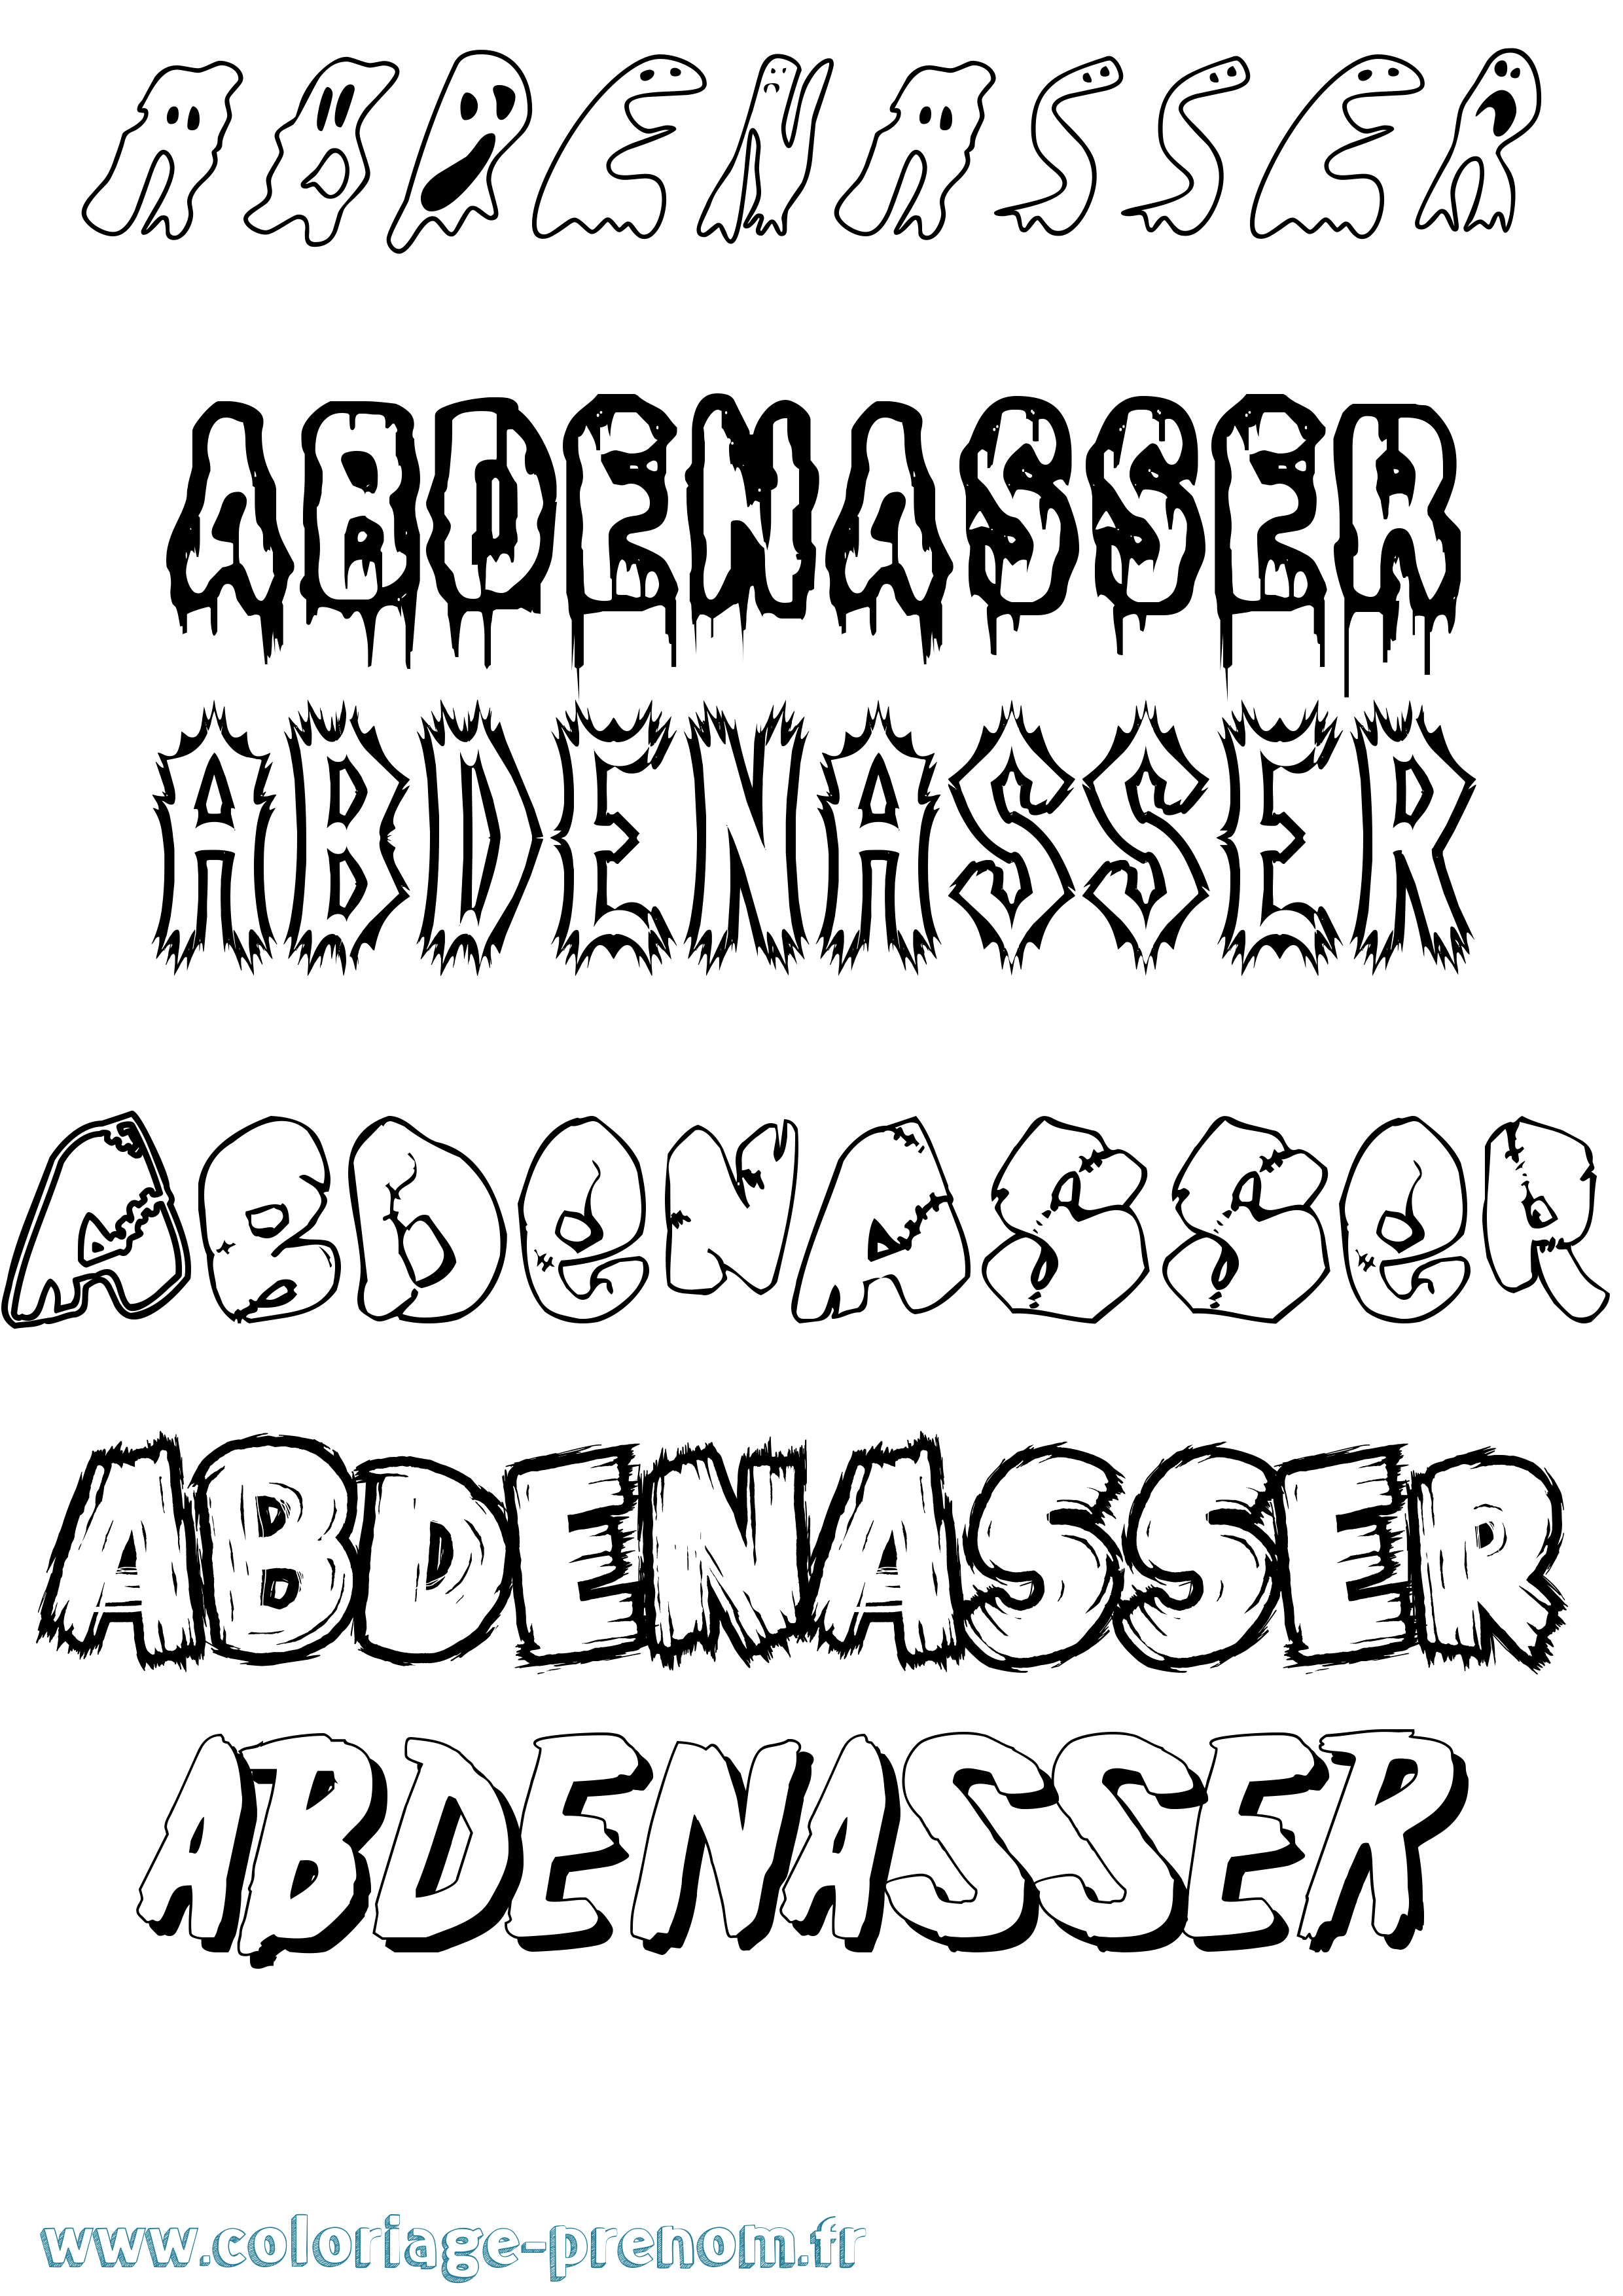 Coloriage prénom Abdenasser Frisson